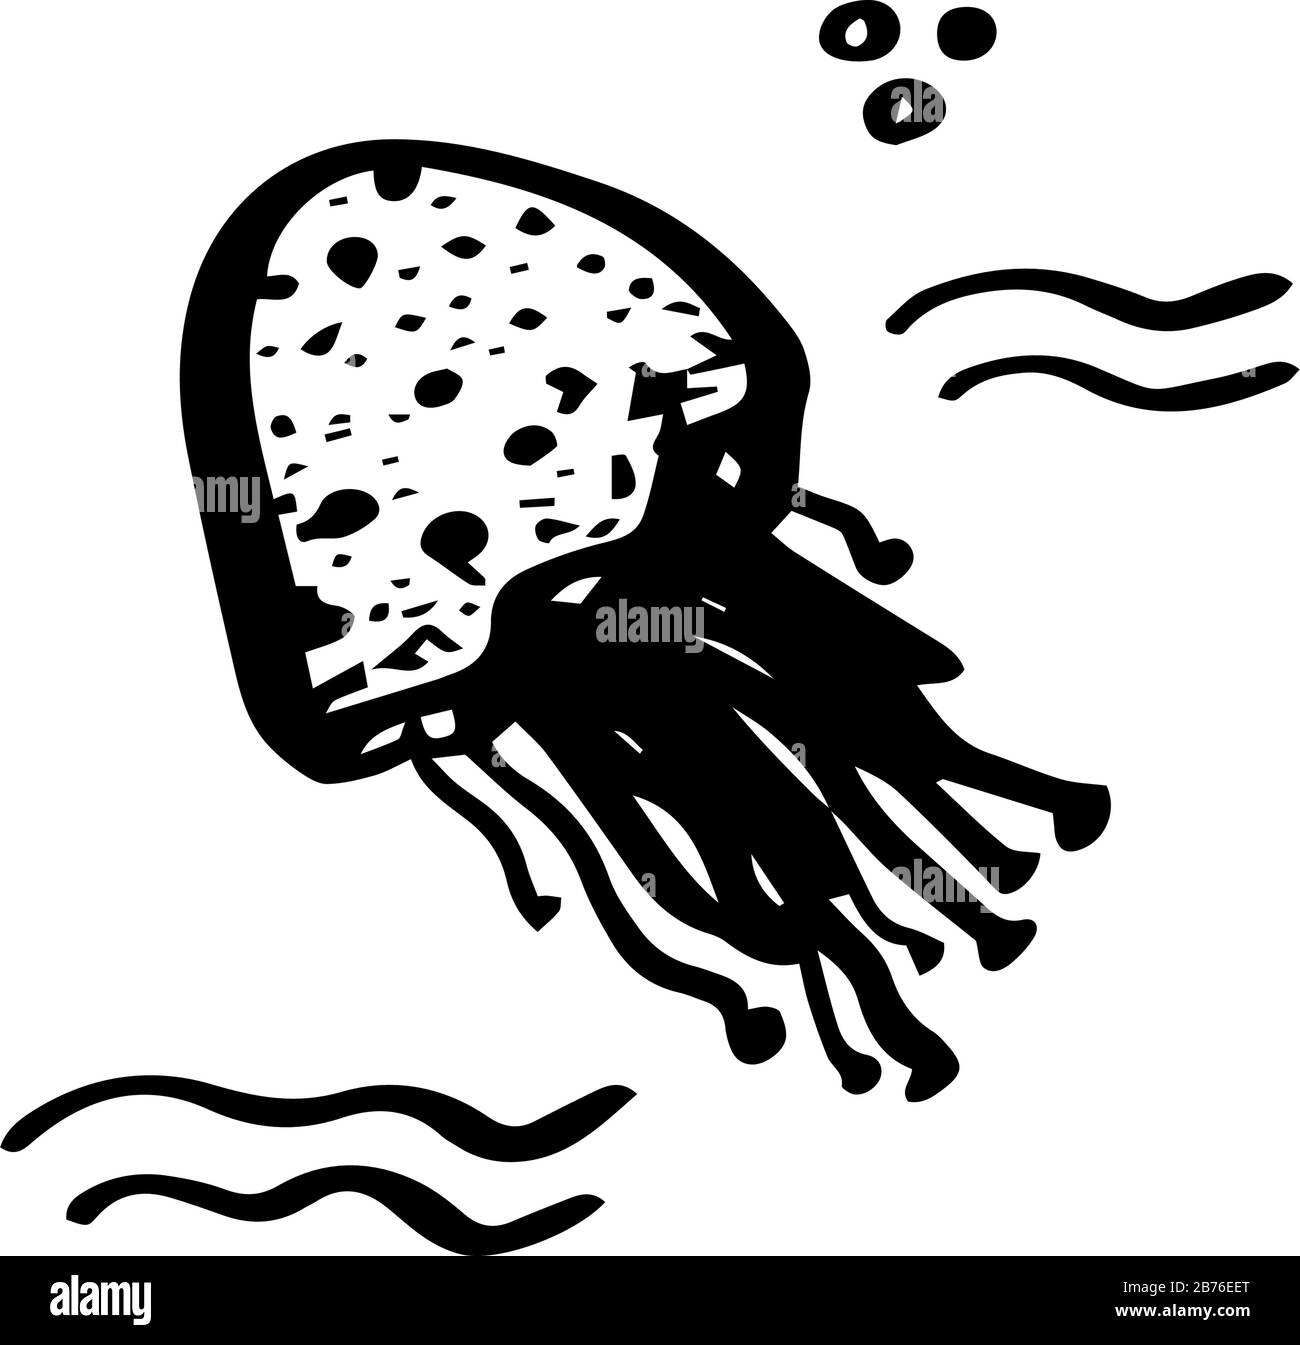 Jellyfish doux animal de mer dans le style de doiche isolé sur fond blanc. Illustration vectorielle des animaux marins. Conception enfant d'été simple. Illustration de Vecteur